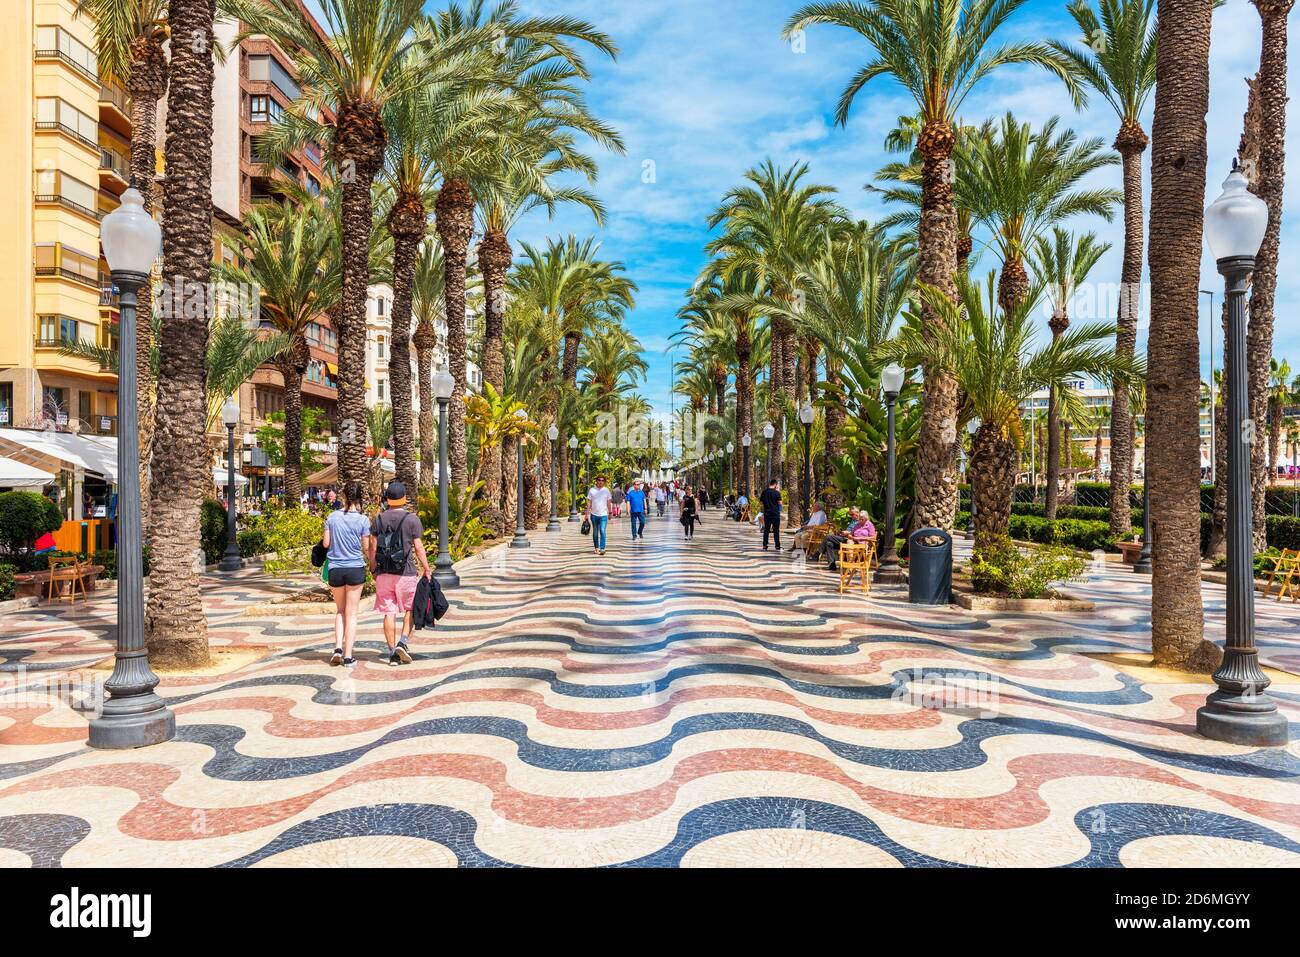 Gente caminando por un paseo marítimo de palmeras en Alicante, España. Alicante es una ciudad situada en el sureste de la Península Ibérica. Foto de stock